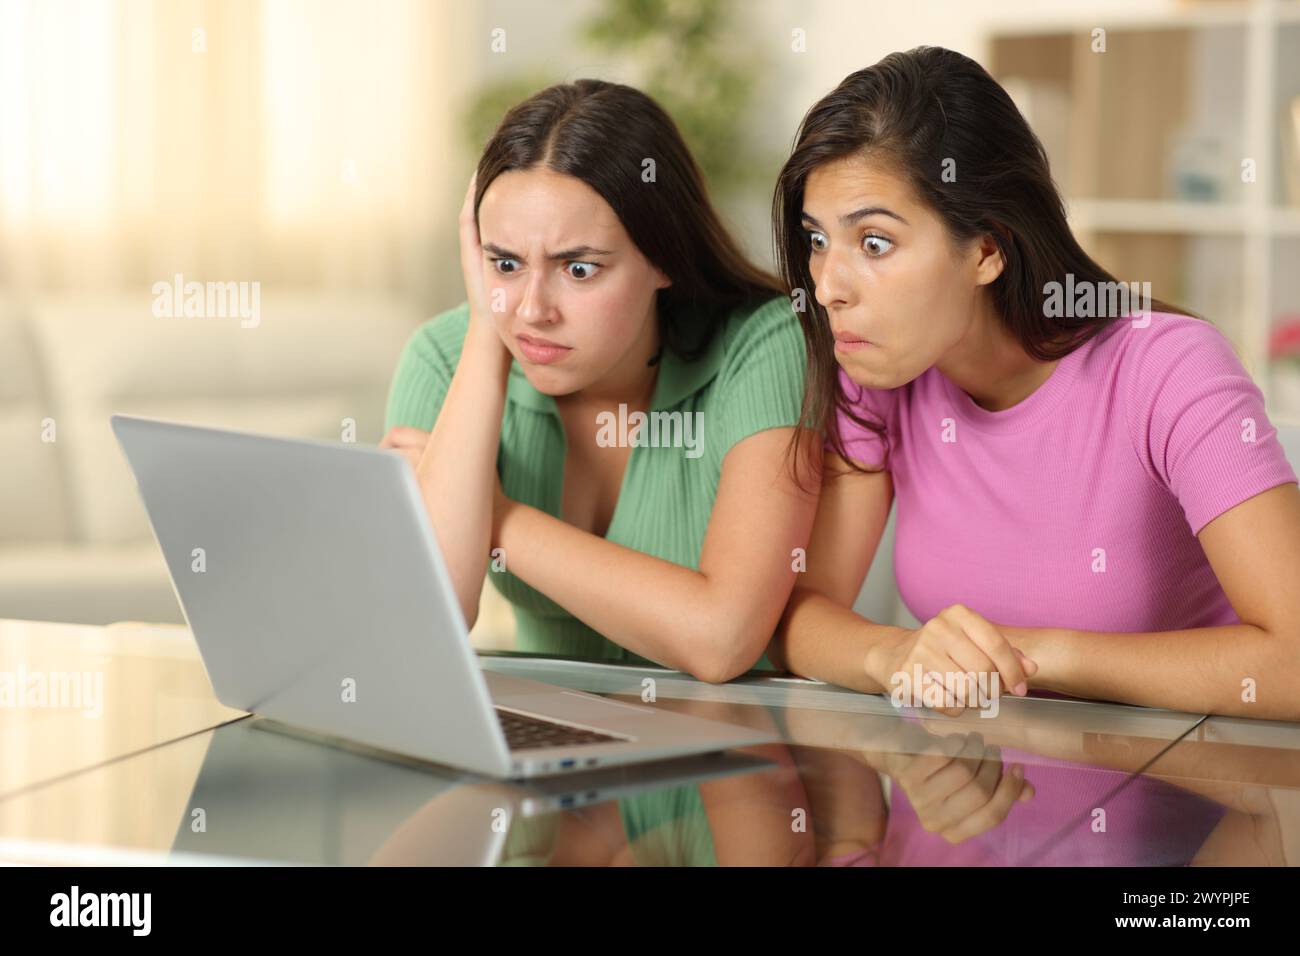 Amis perplexes regardant du contenu multimédia absurde sur un ordinateur portable assis à la maison Banque D'Images